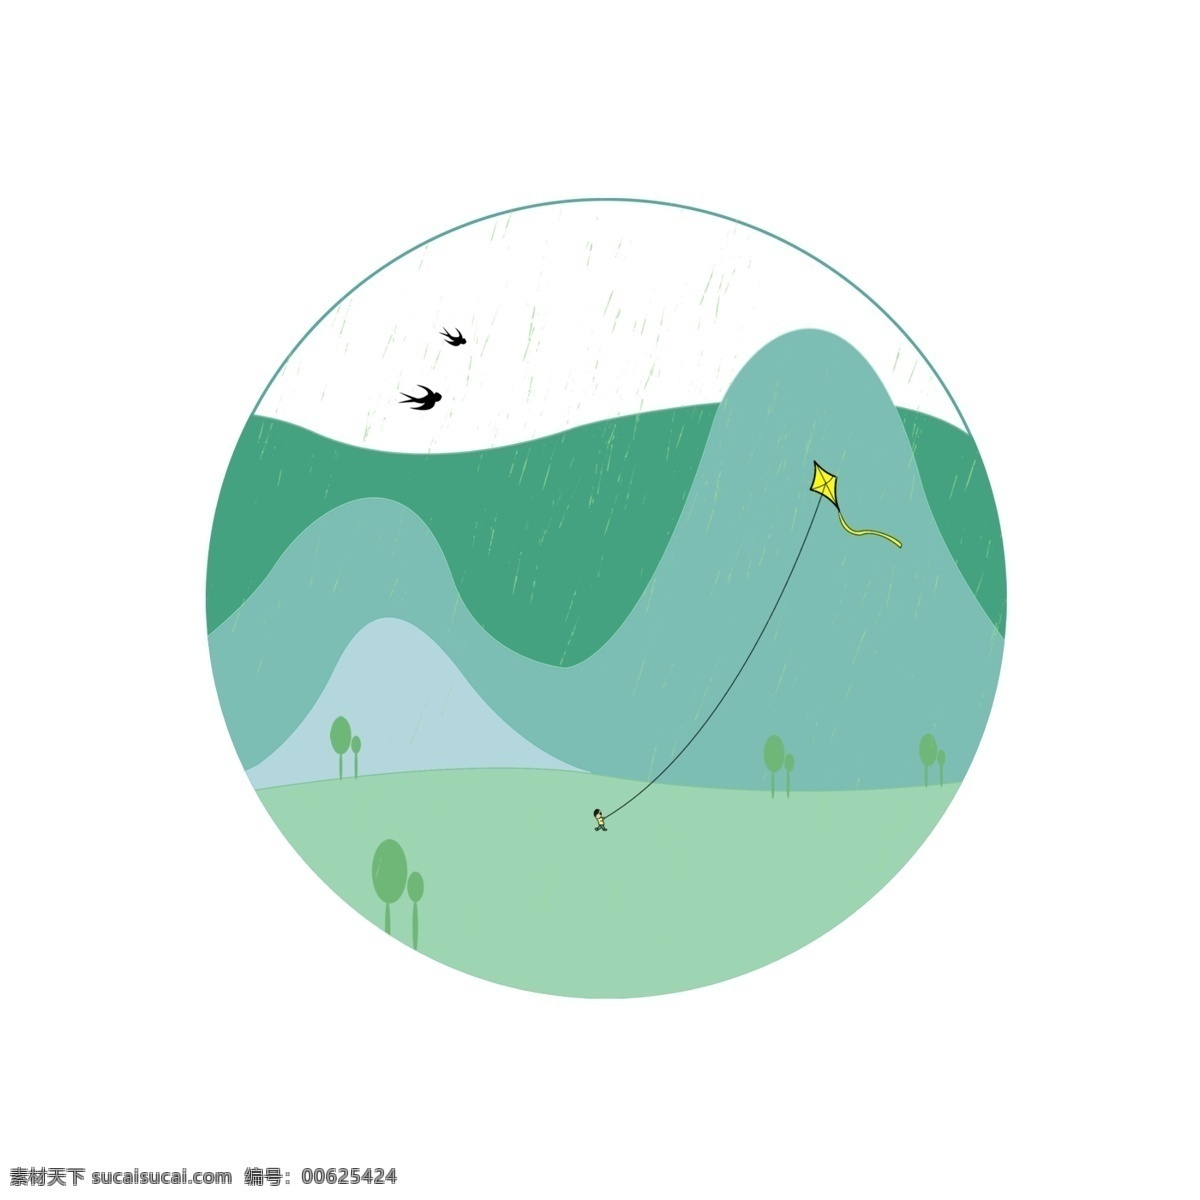 圆形 图案 清明节 插图 远景图案 绿色踏青 黑色燕子 飞行的燕子 自由的燕子 春天的燕子 黄色的风筝